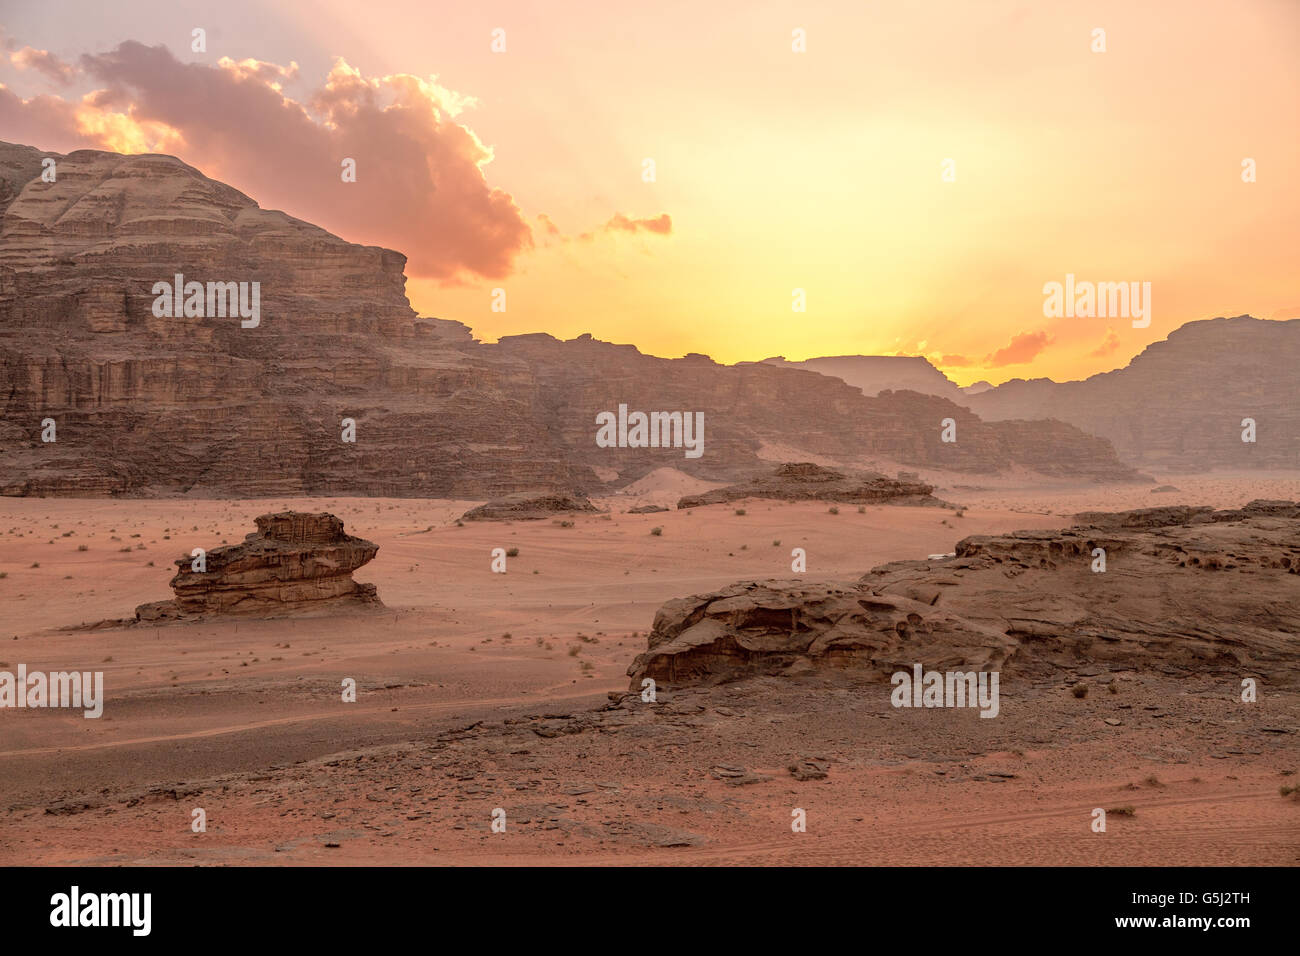 Wadi Rum Jordania al atardecer Foto de stock